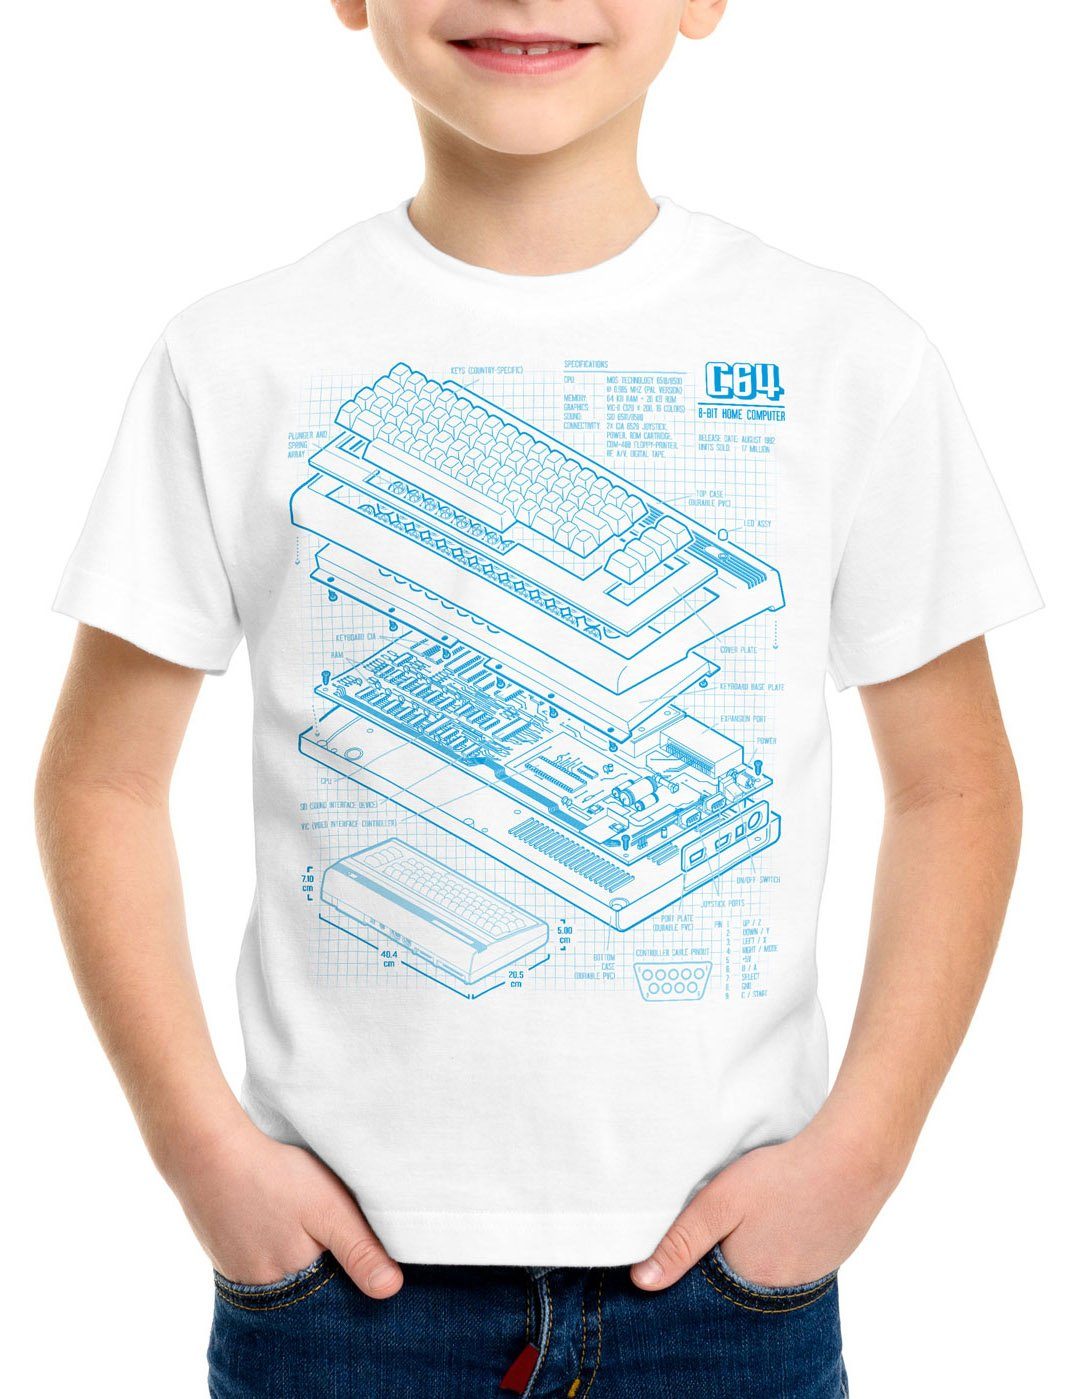 style3 Print-Shirt Kinder T-Shirt C64 Heimcomputer classic gamer weiß